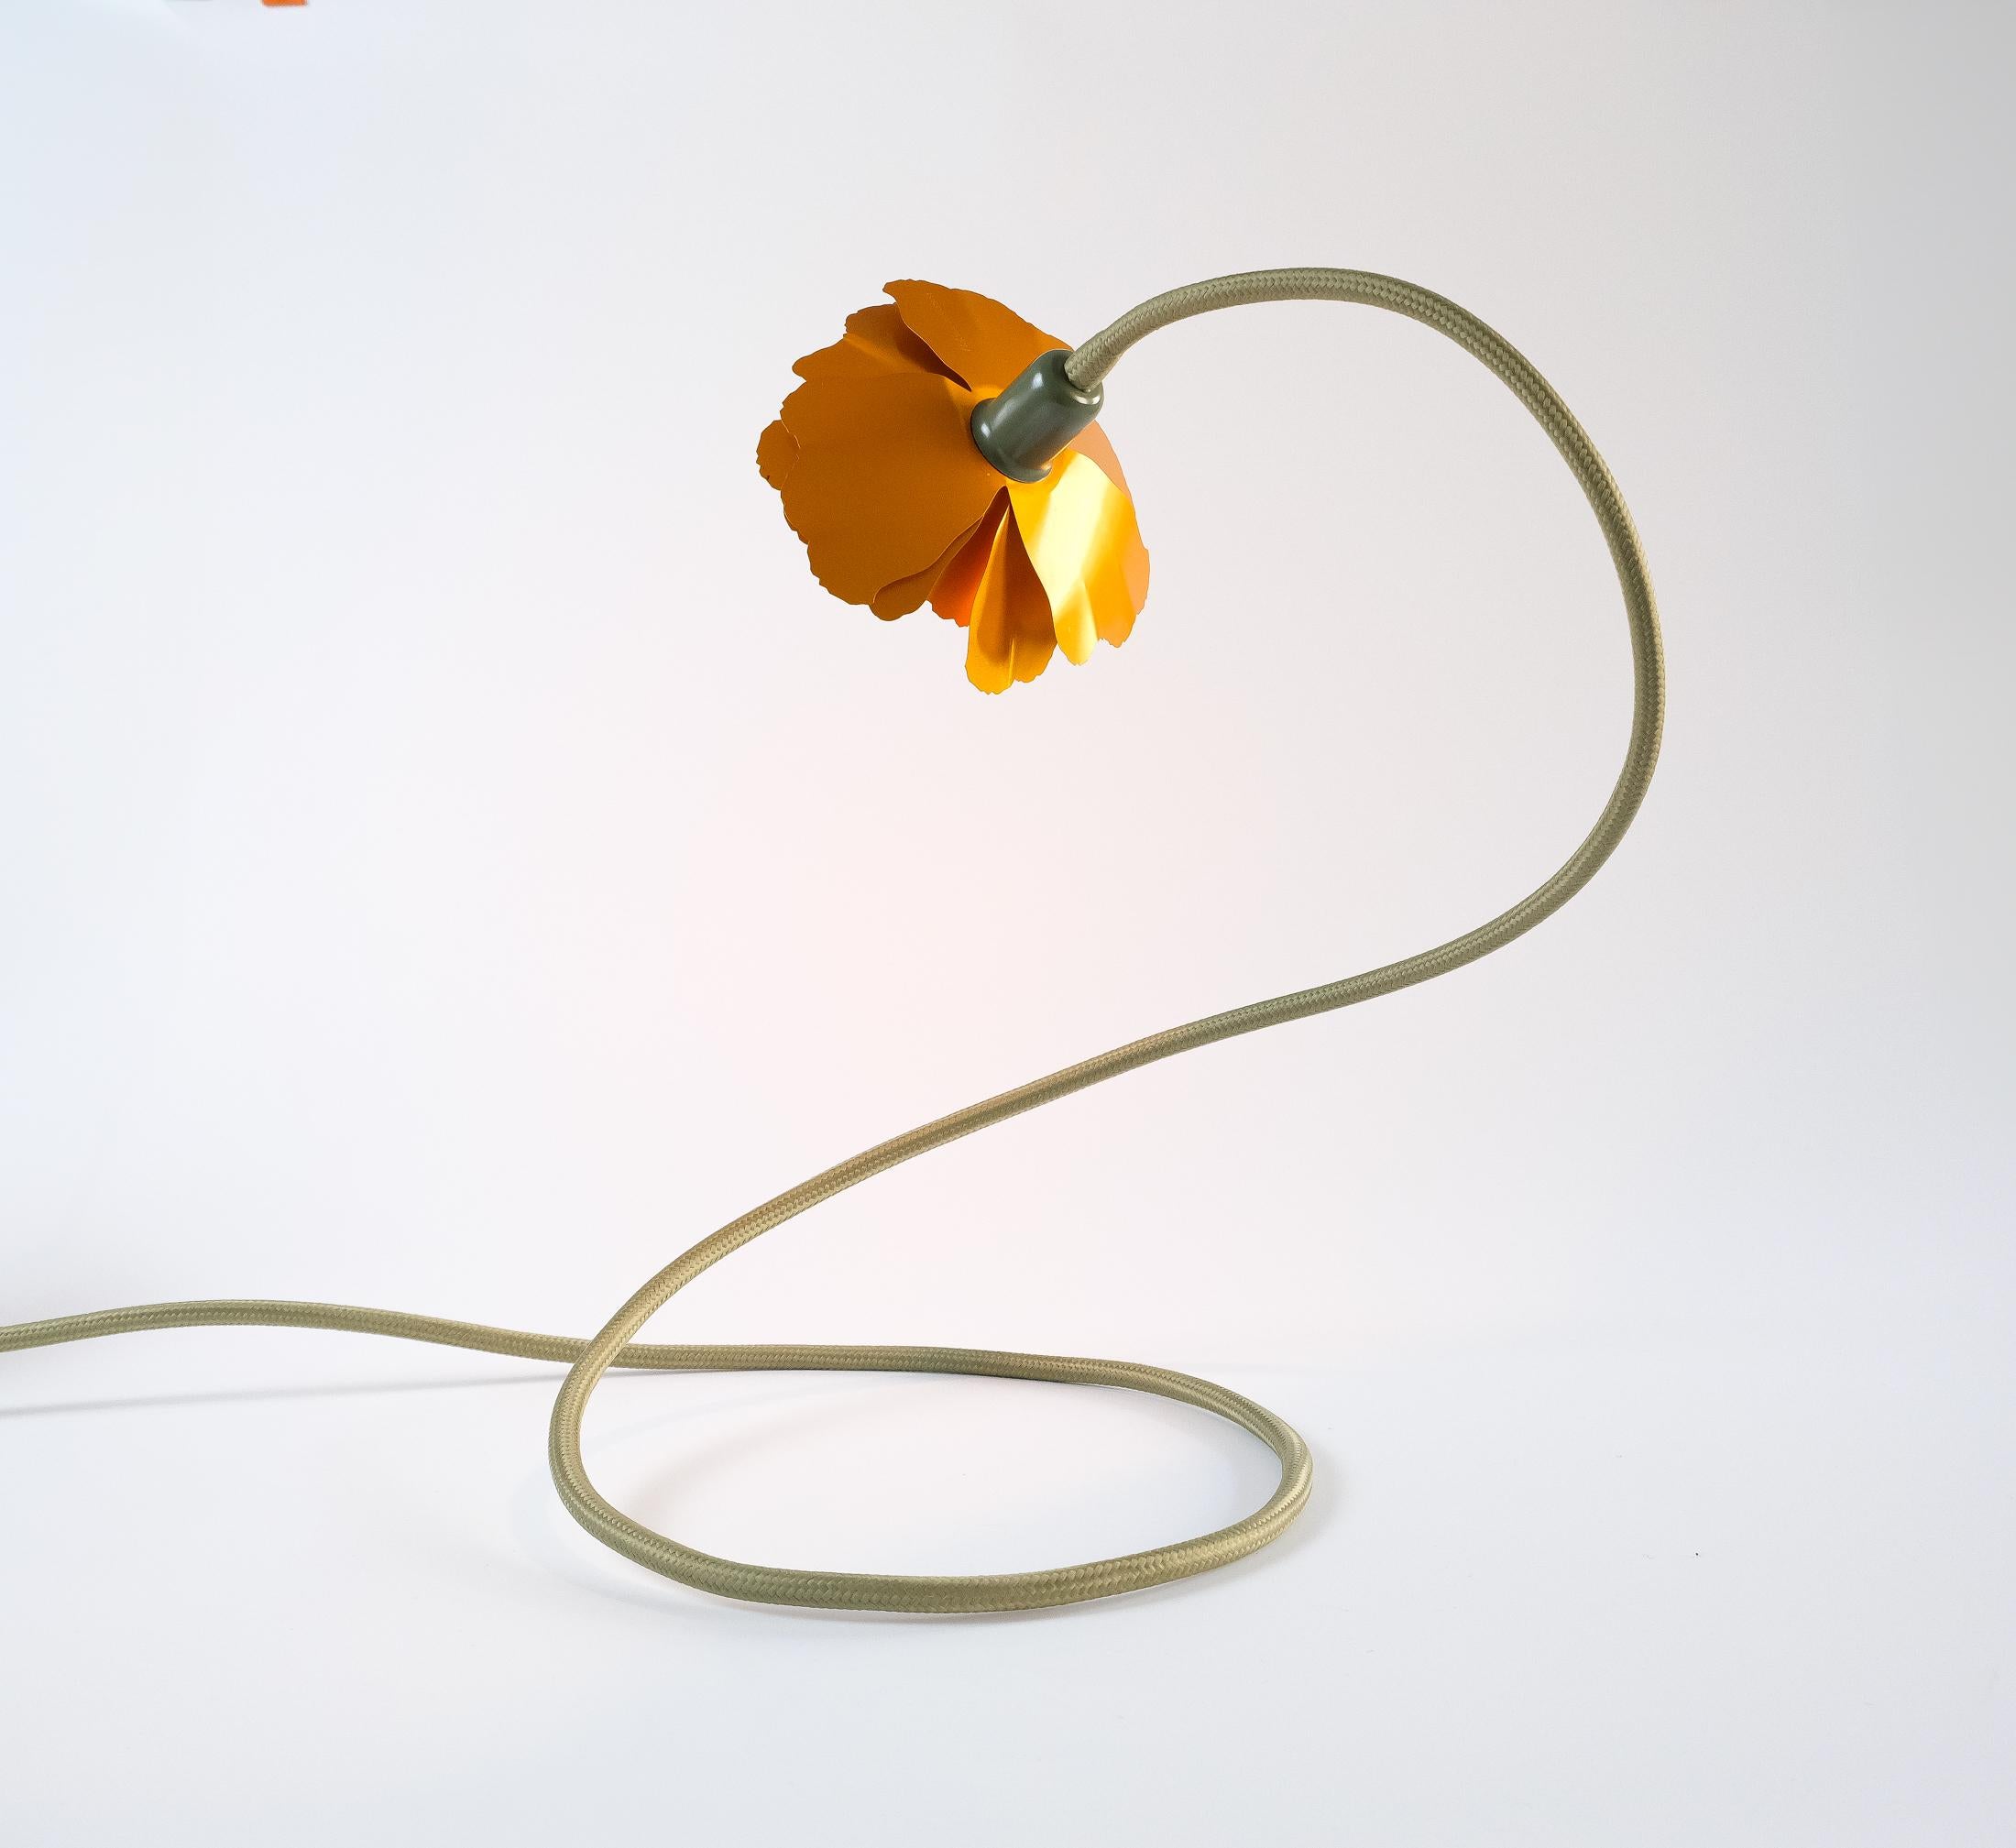 Helena Christensen's Flexible Flower Lamp for Habitat “V.I.P” Collection, 2004 For Sale 5